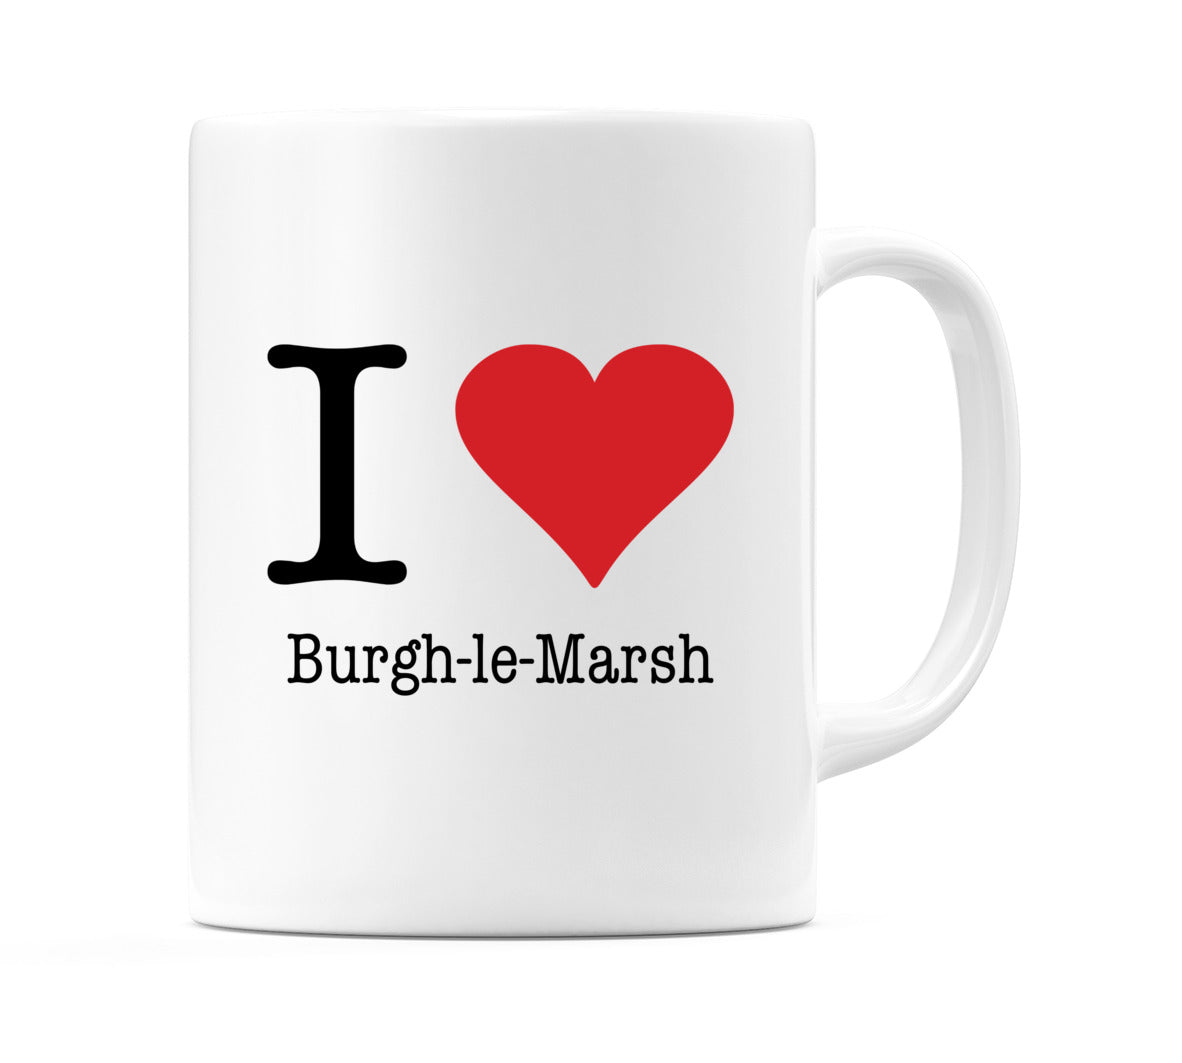 I Love Burgh-le-Marsh Mug